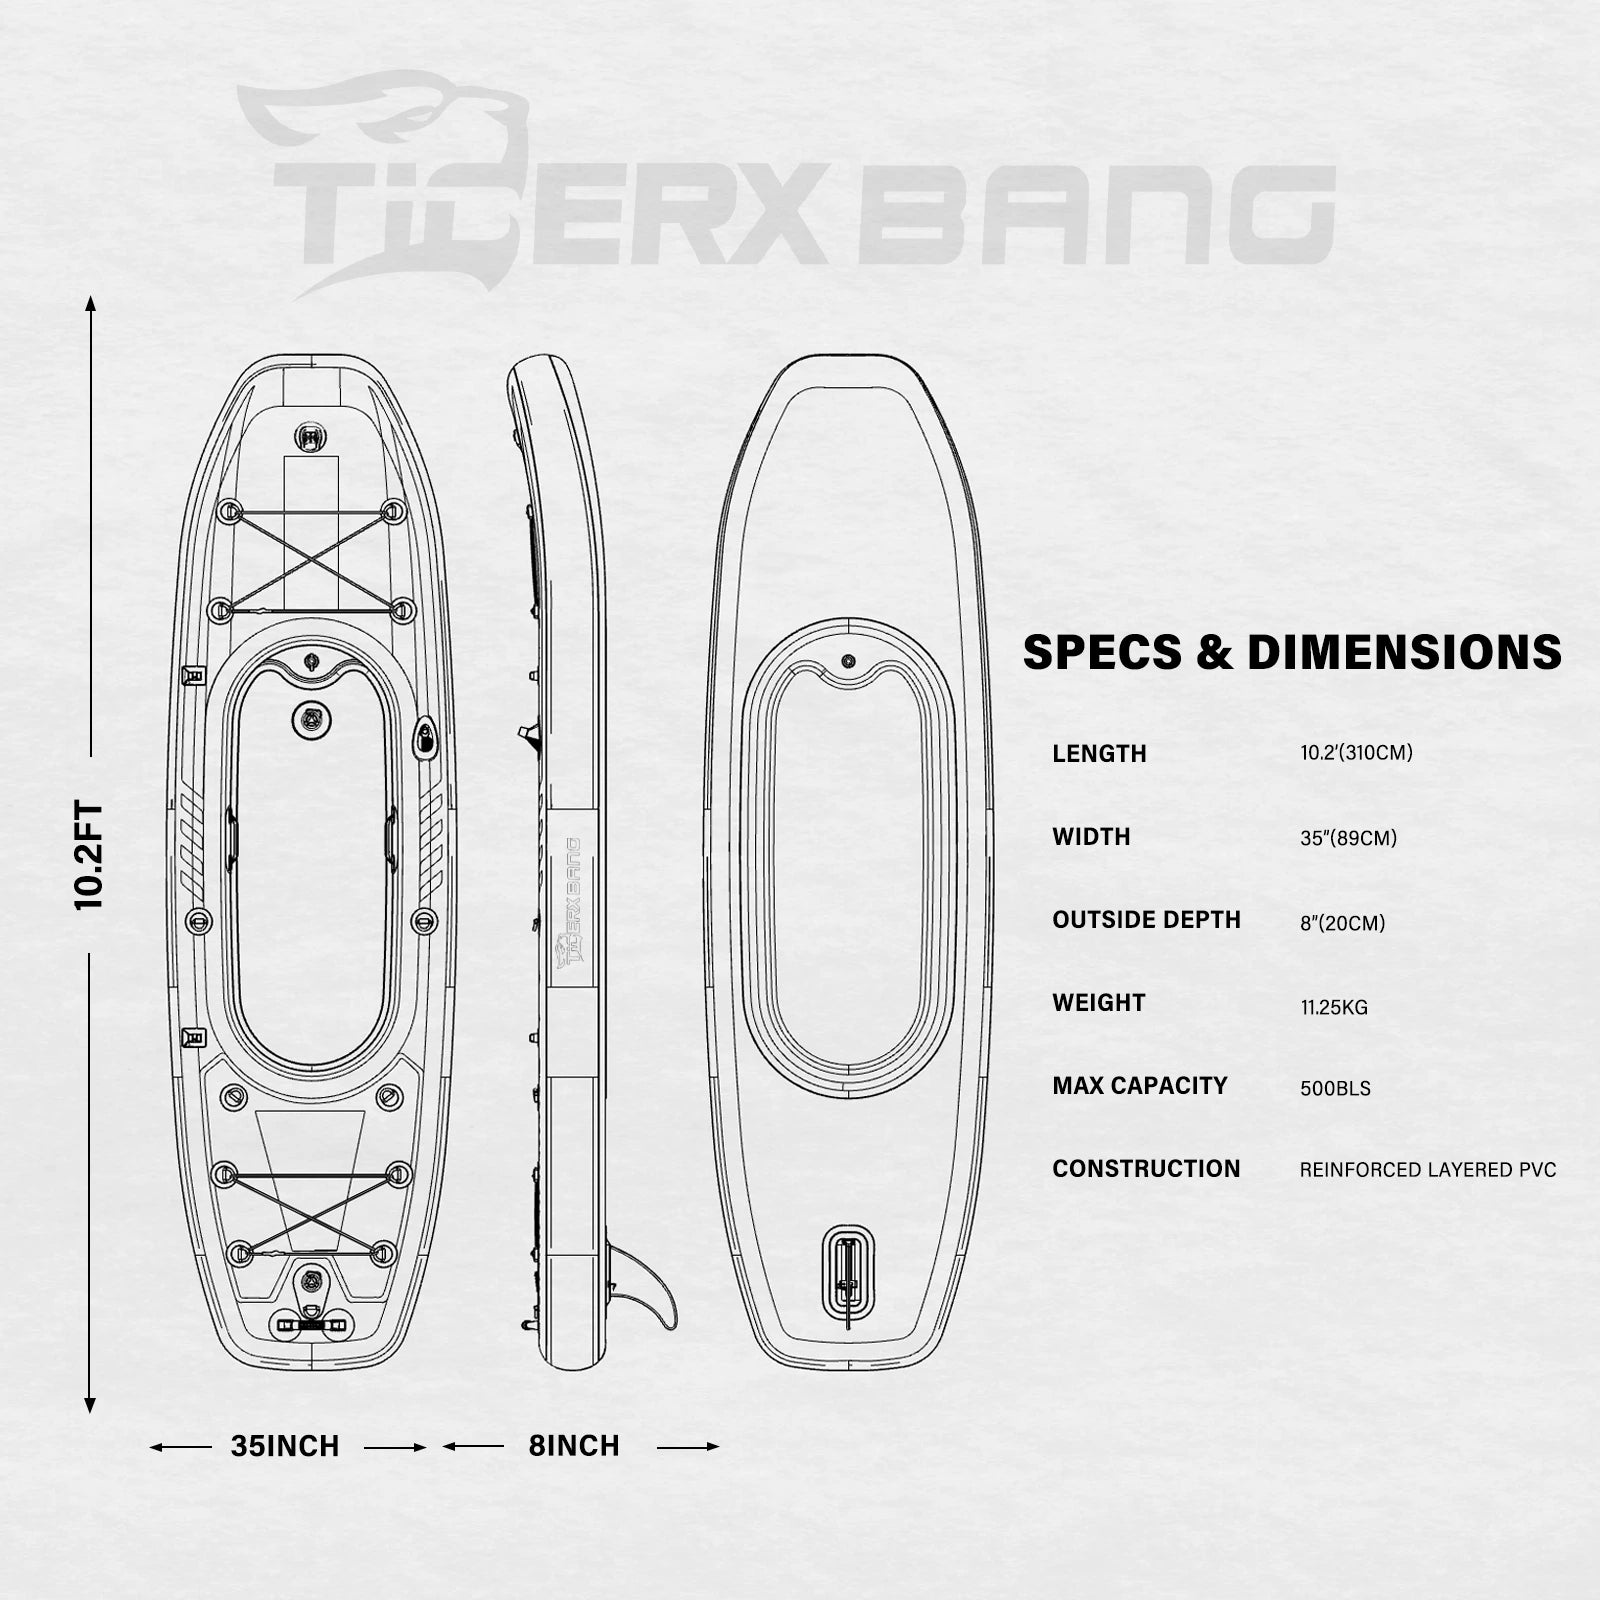 TIGERXBANG 10'2" Inflatable Kayak